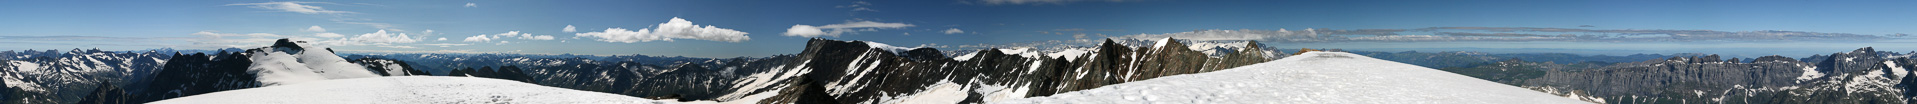 Gipfelpanorama mit Blick zur Bernina und zu den Walliser Bergen.